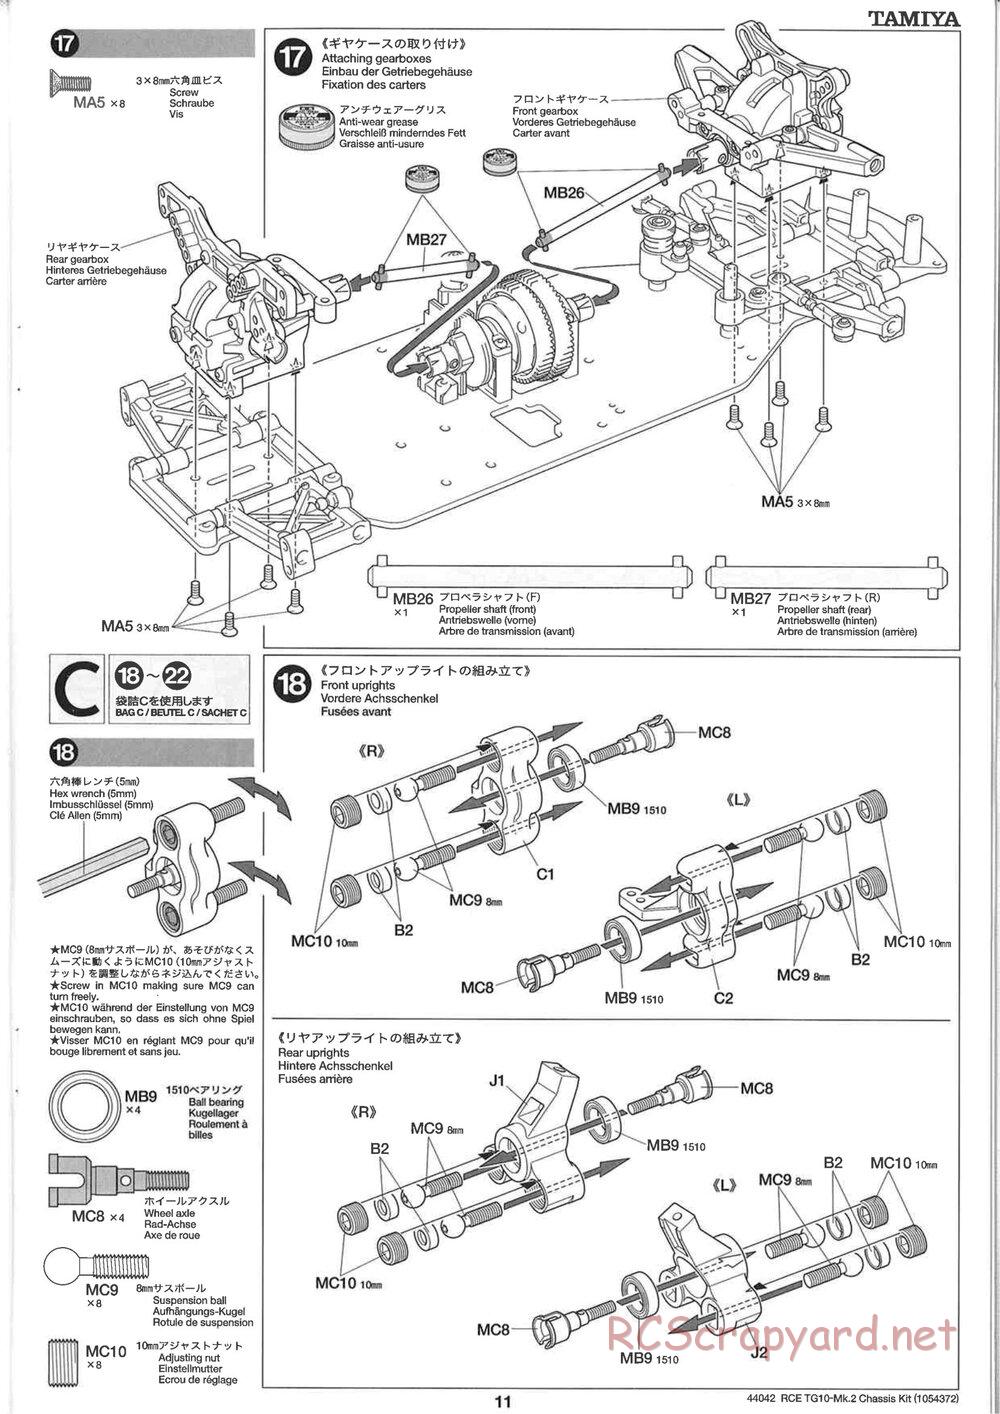 Tamiya - TG10 Mk.2 Chassis - Manual - Page 11